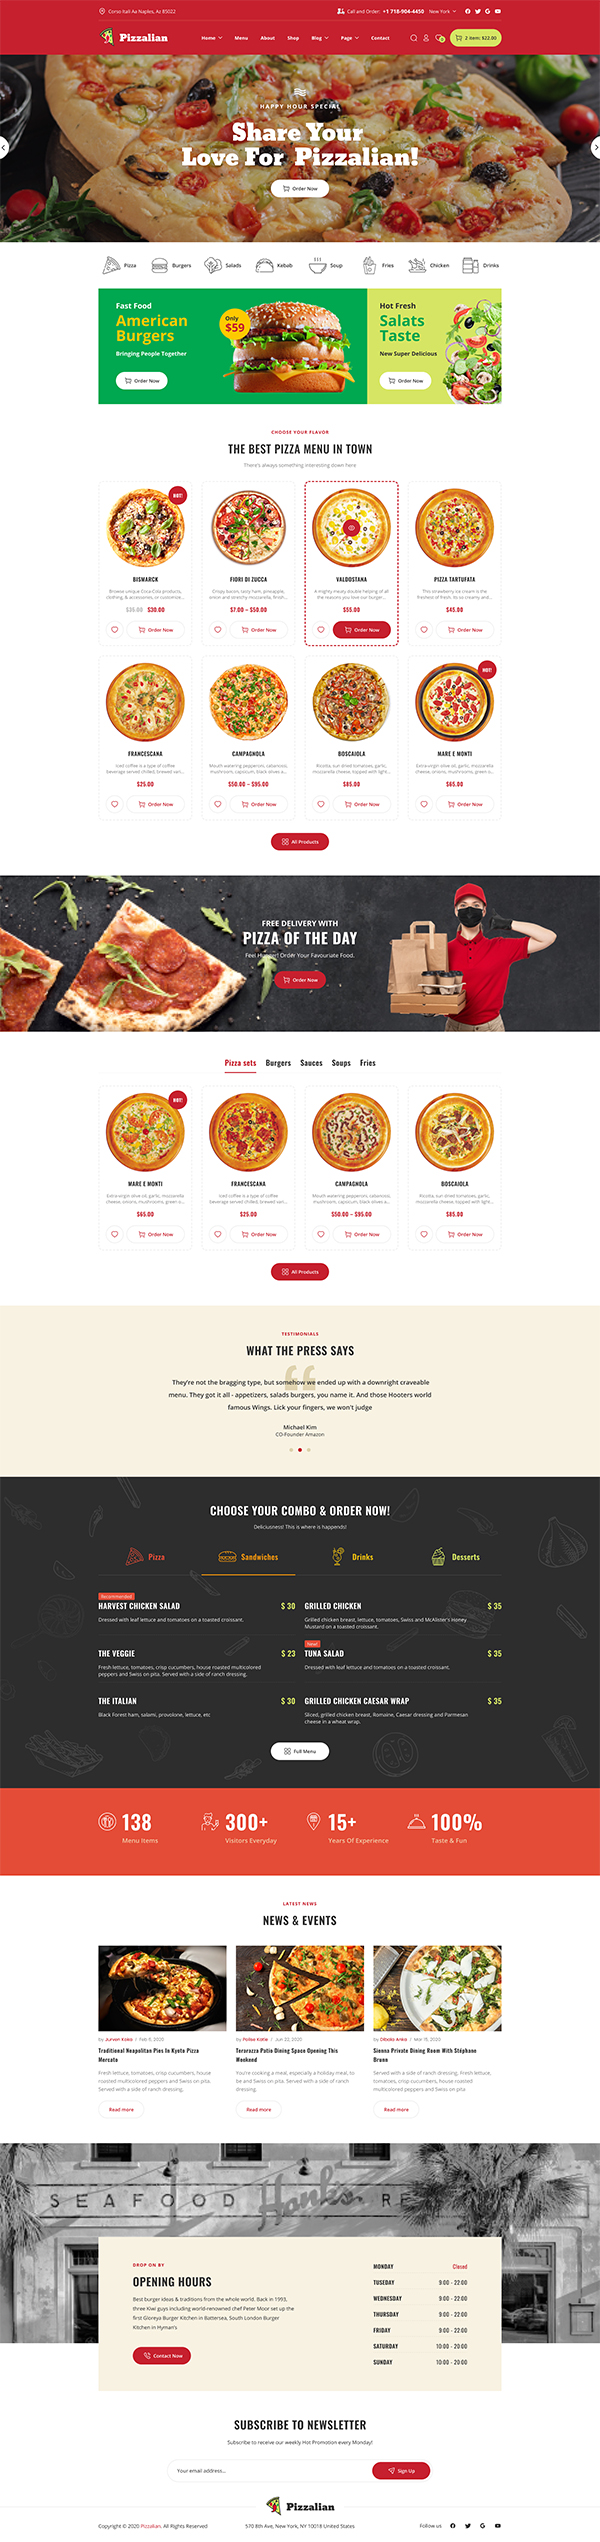 Piizalian - Fast Food Restaurant WordPress Theme